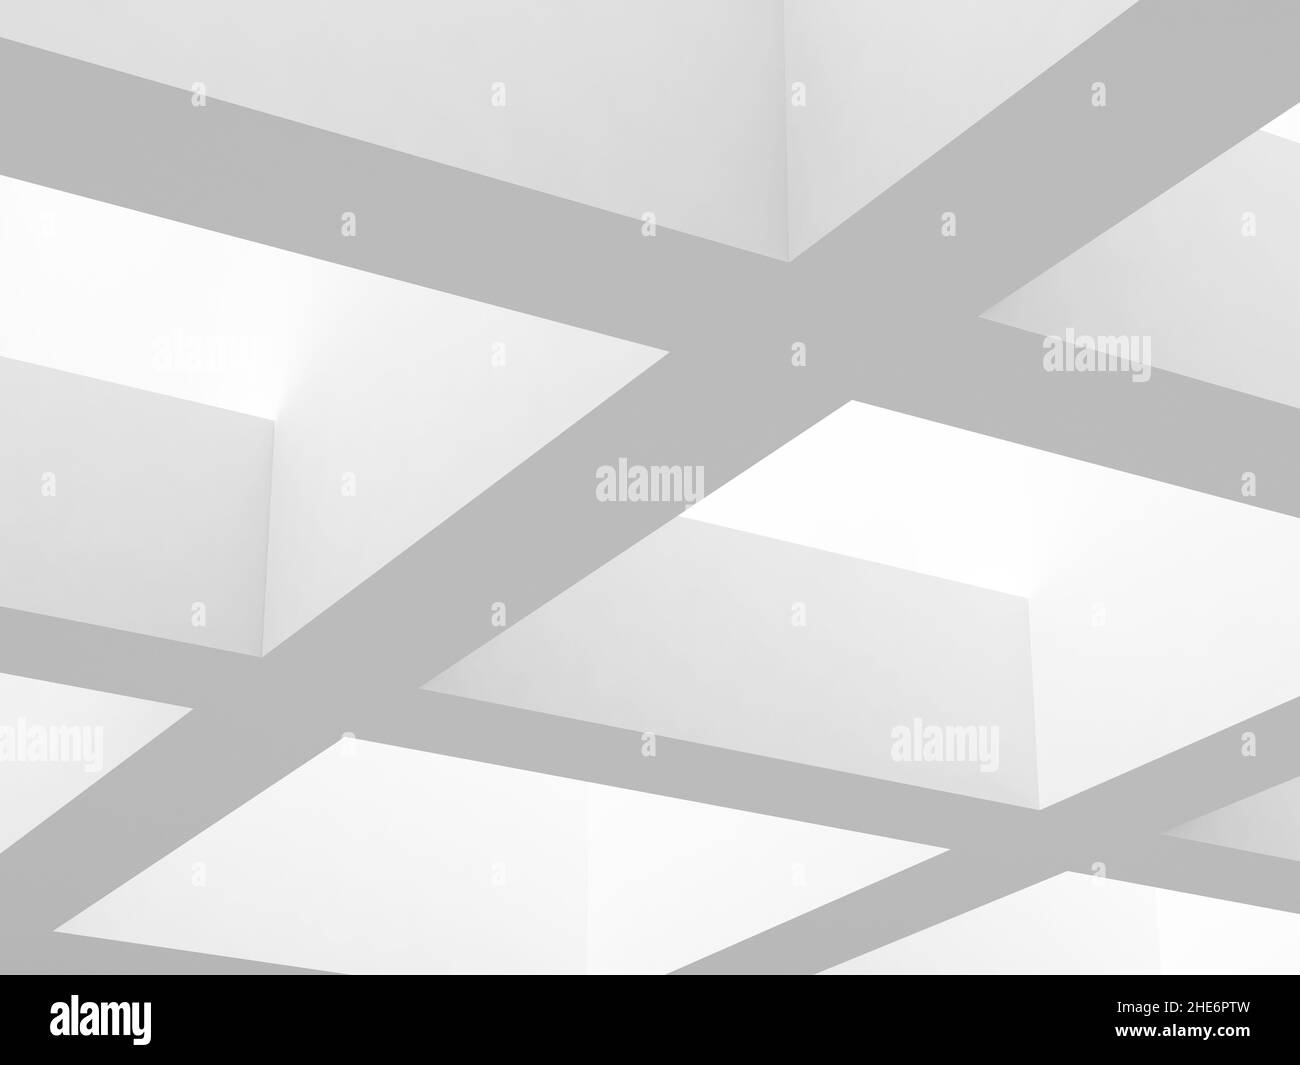 Abstrakter minimaler architektonischer Hintergrund. Weiße Dachfenster-Rahmenelemente mit weichen Schatten. 3D Rendering-Illustration Stockfoto